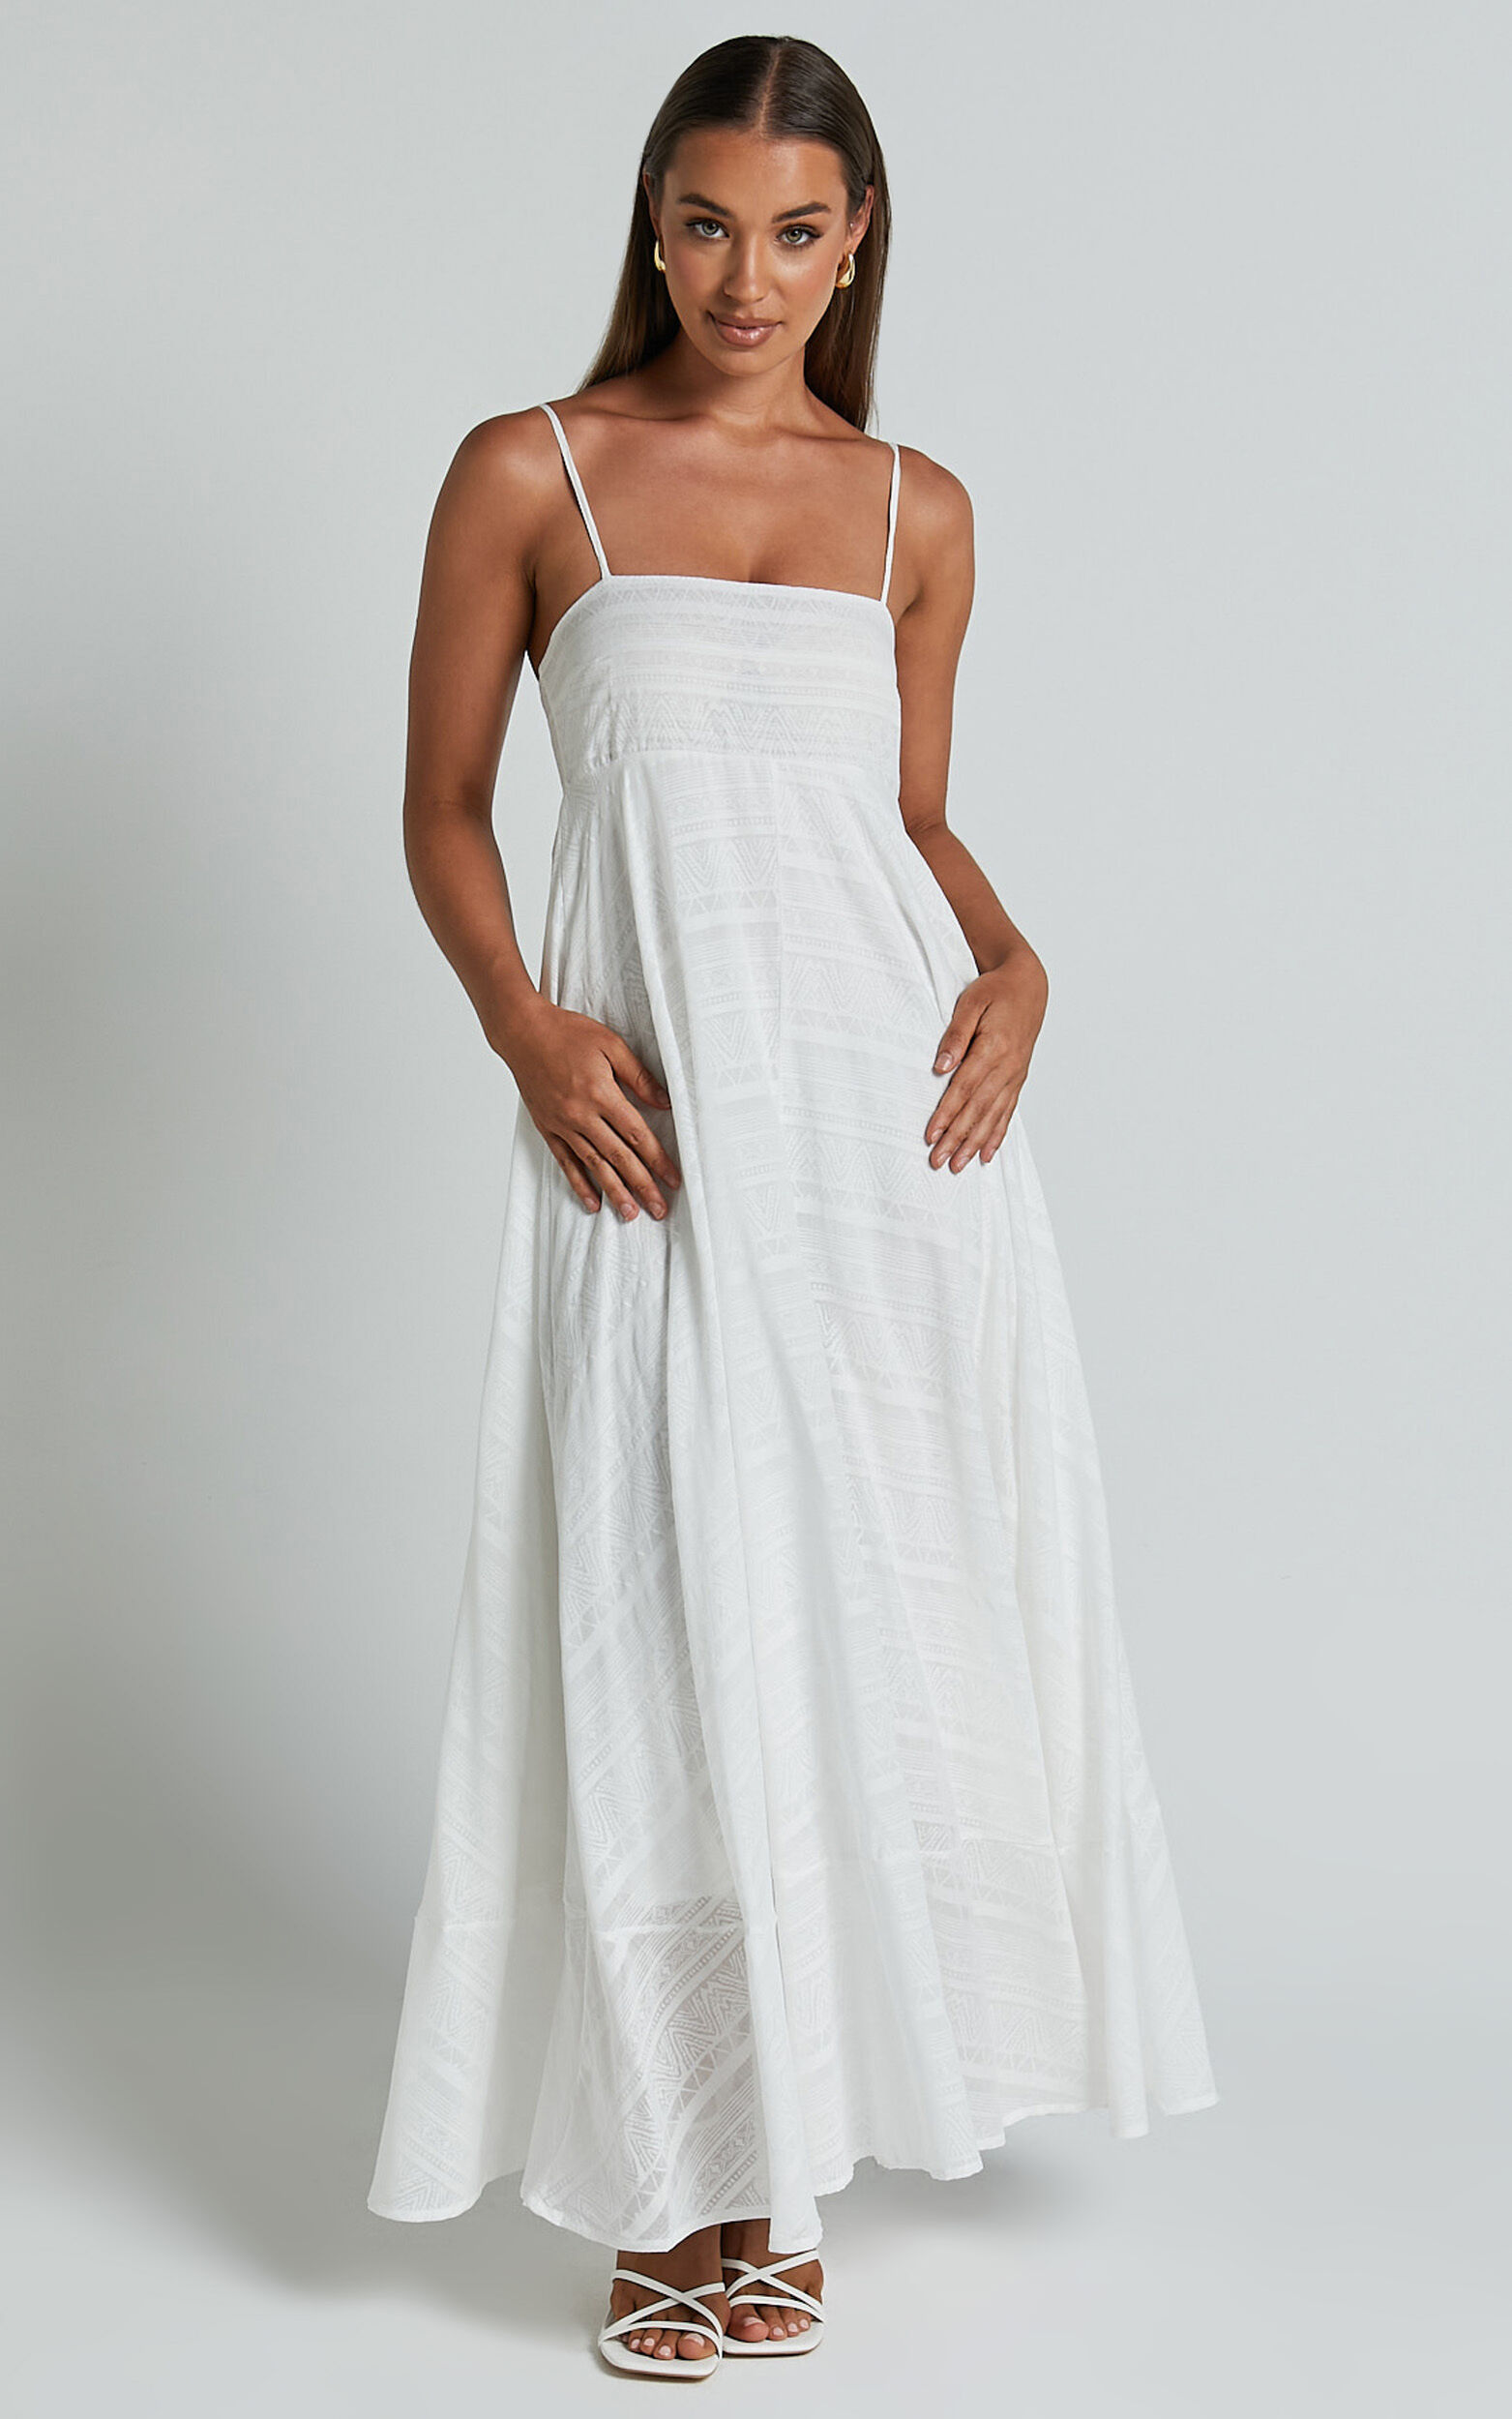 Noremi Midi Dress - Strappy Straight Neck A Line Dress in White - 06, WHT1